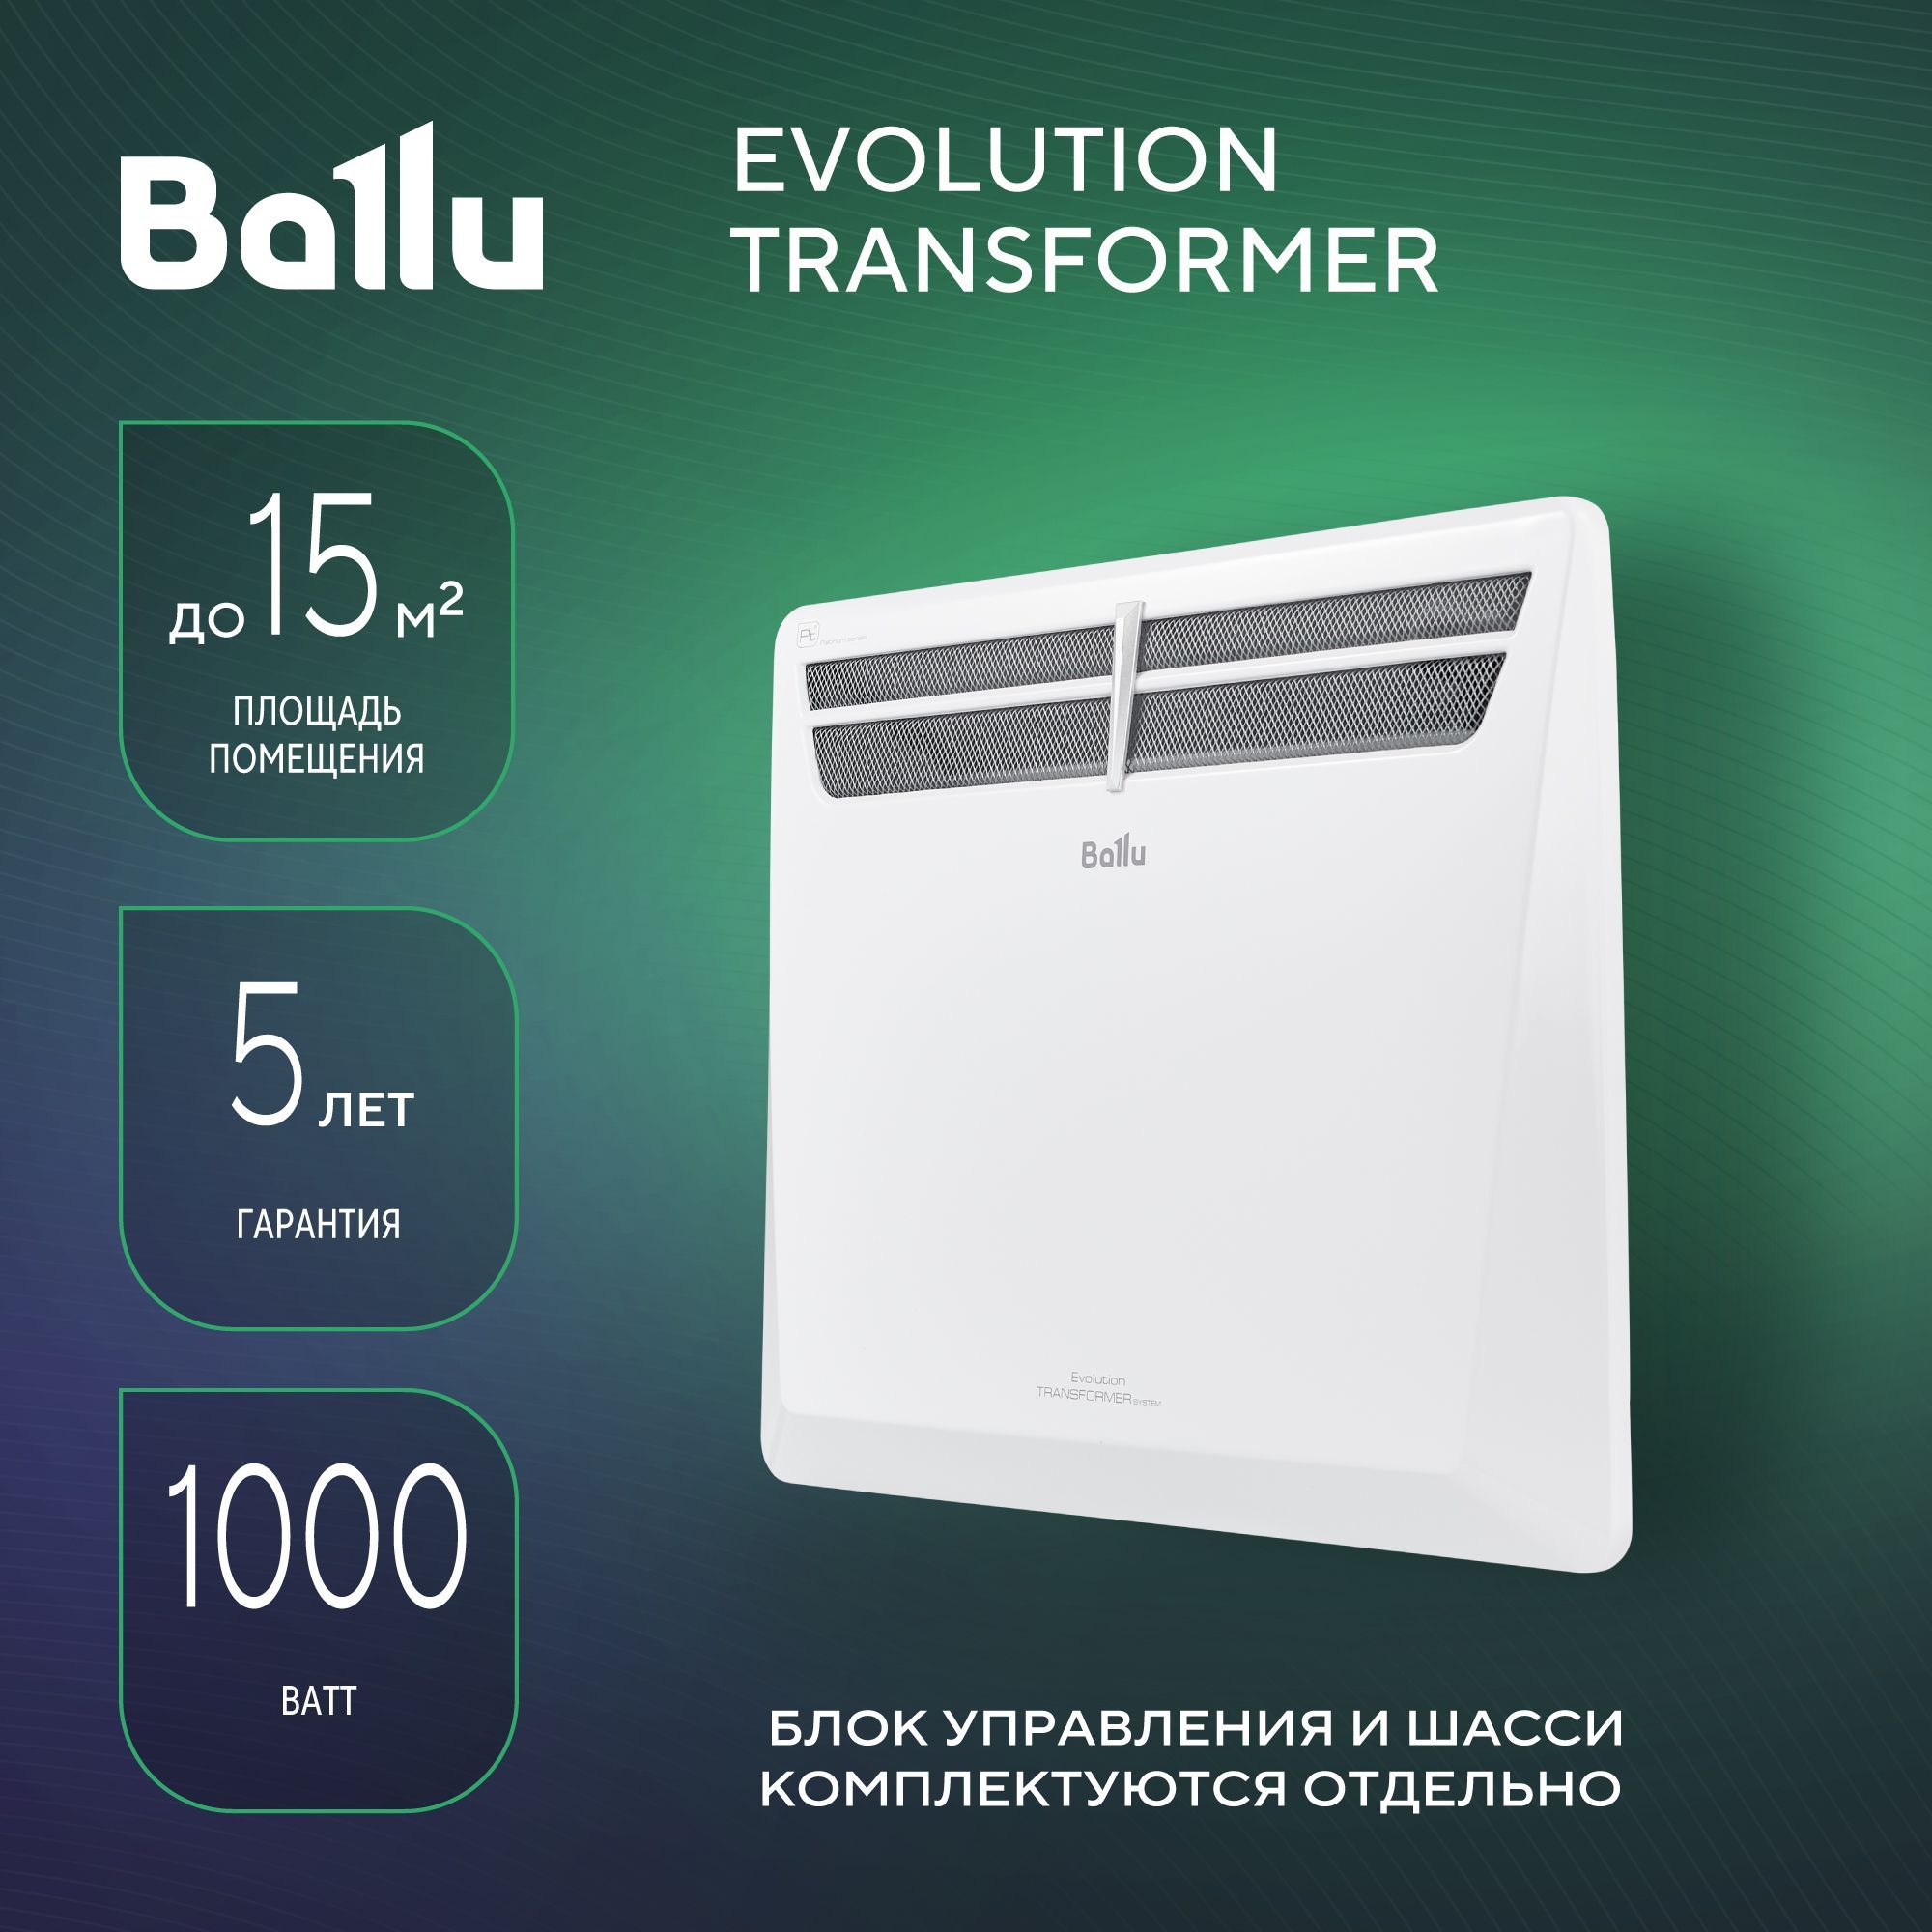 Модуль отопительный электрического конвектора Ballu Evolution Transformer BEC/EVU-1000. Конвектор Ballu 1000. ТЭН для конвектора Ballu 1000w. ТЭН для конвектора Ballu 1000вт. Конвекторы ballu evolution transformer